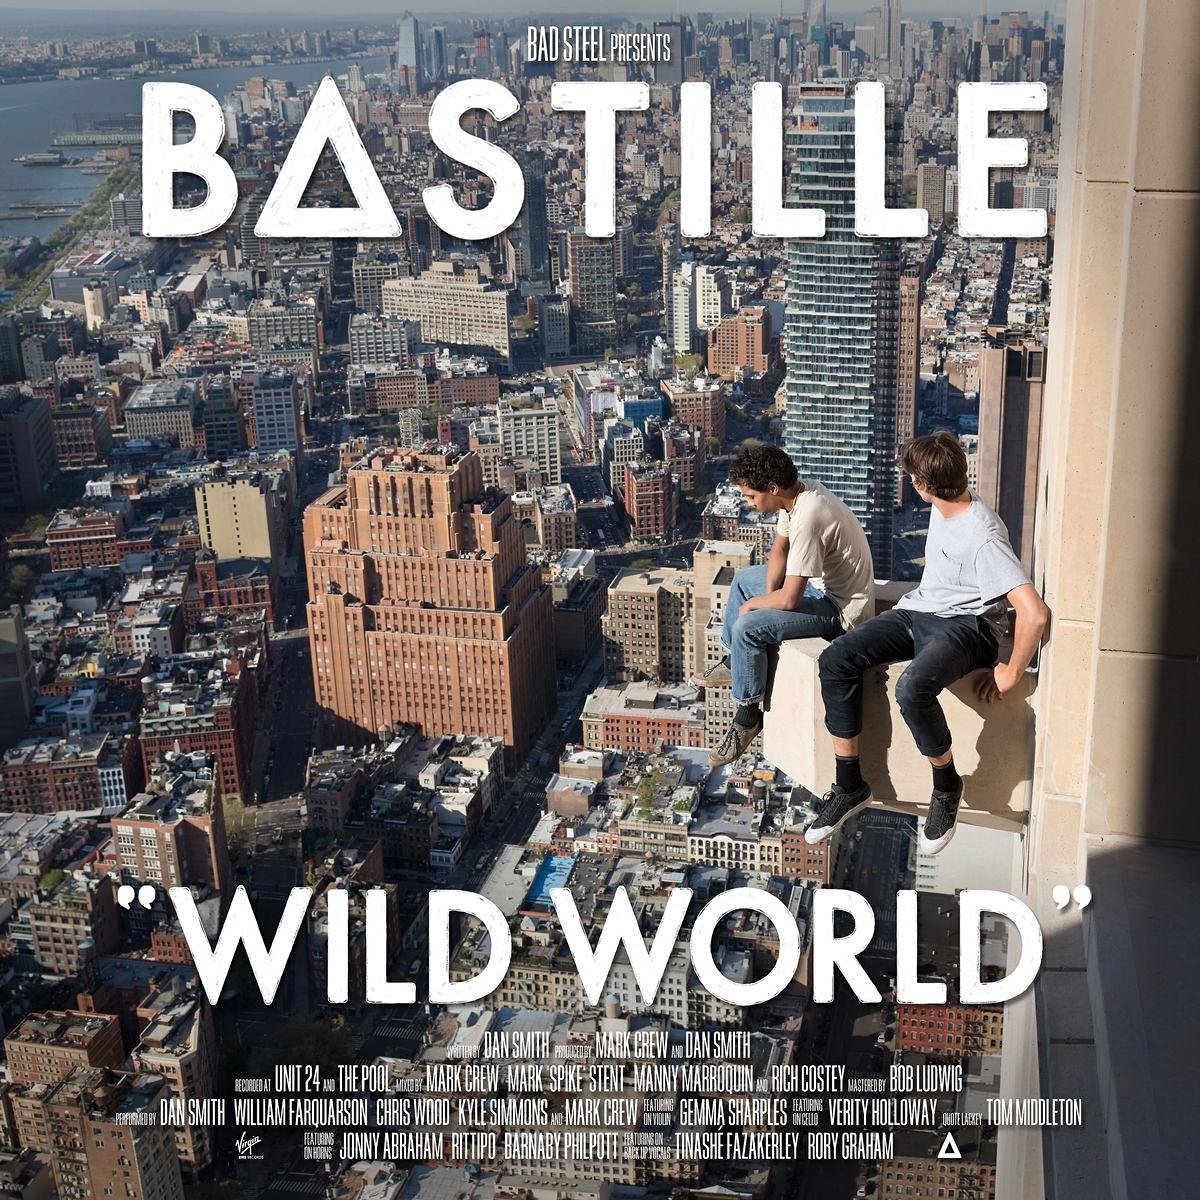 Bastille – Wild World